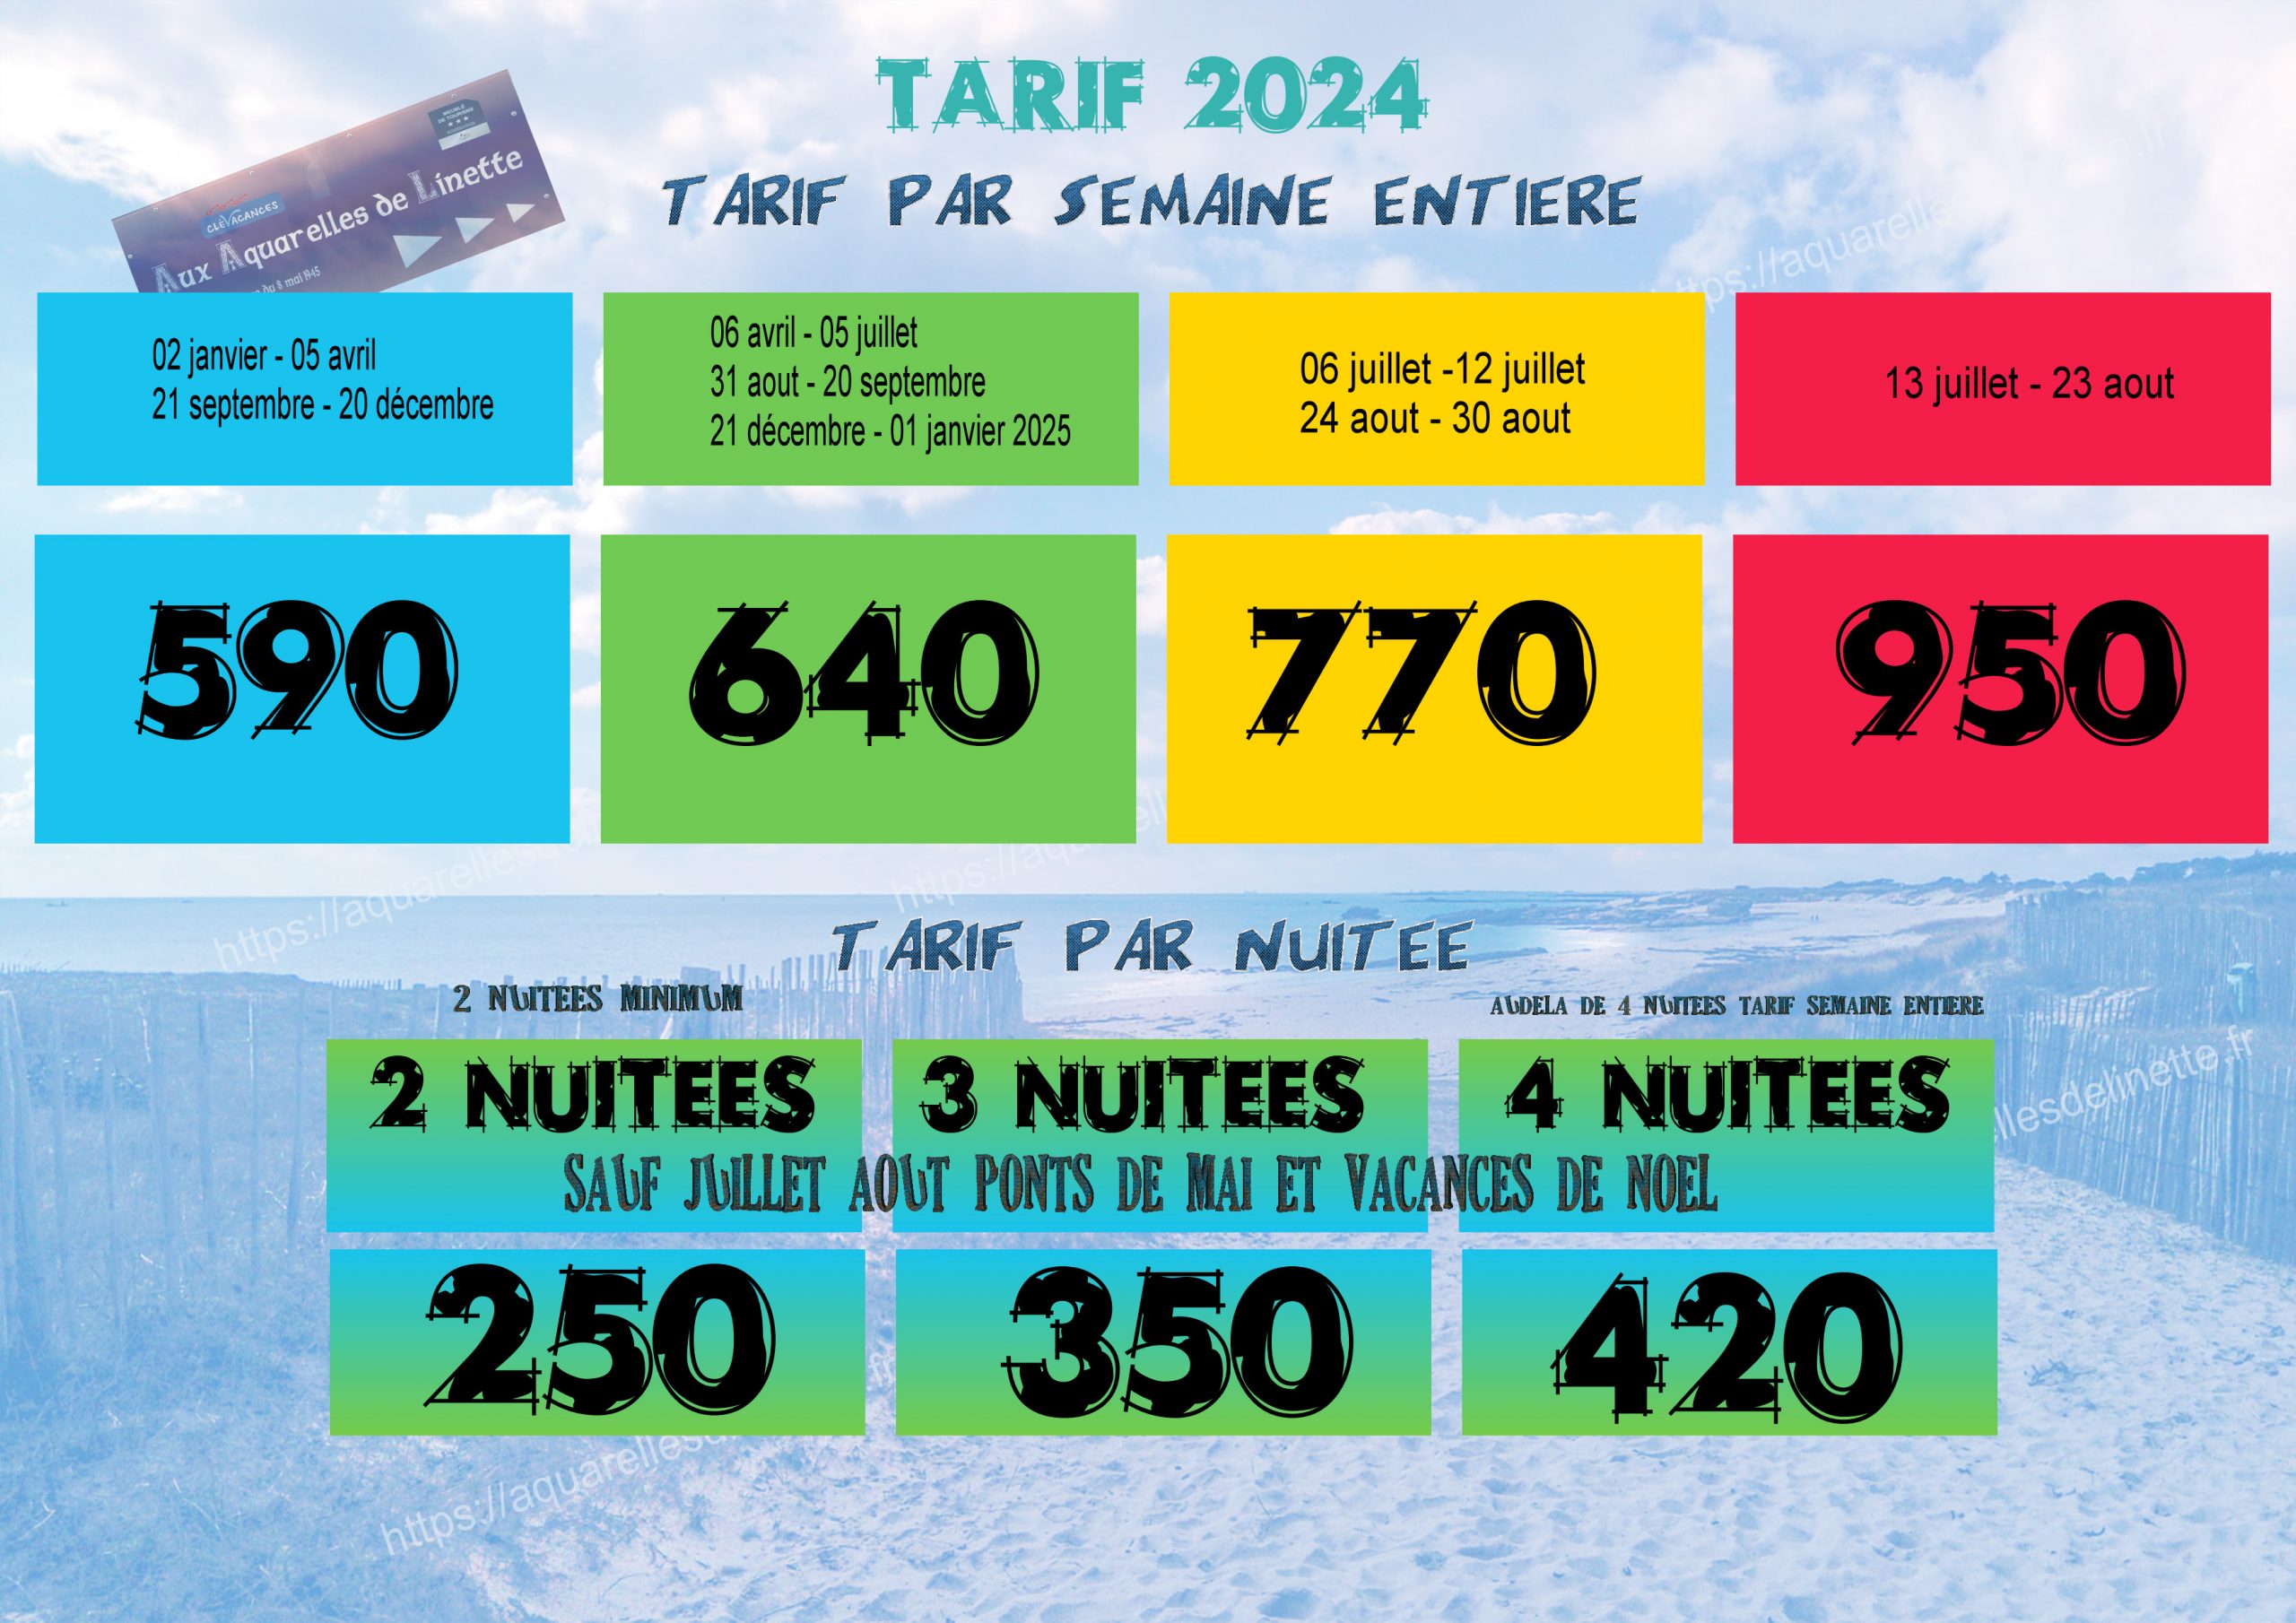 TARIF 2024 P1